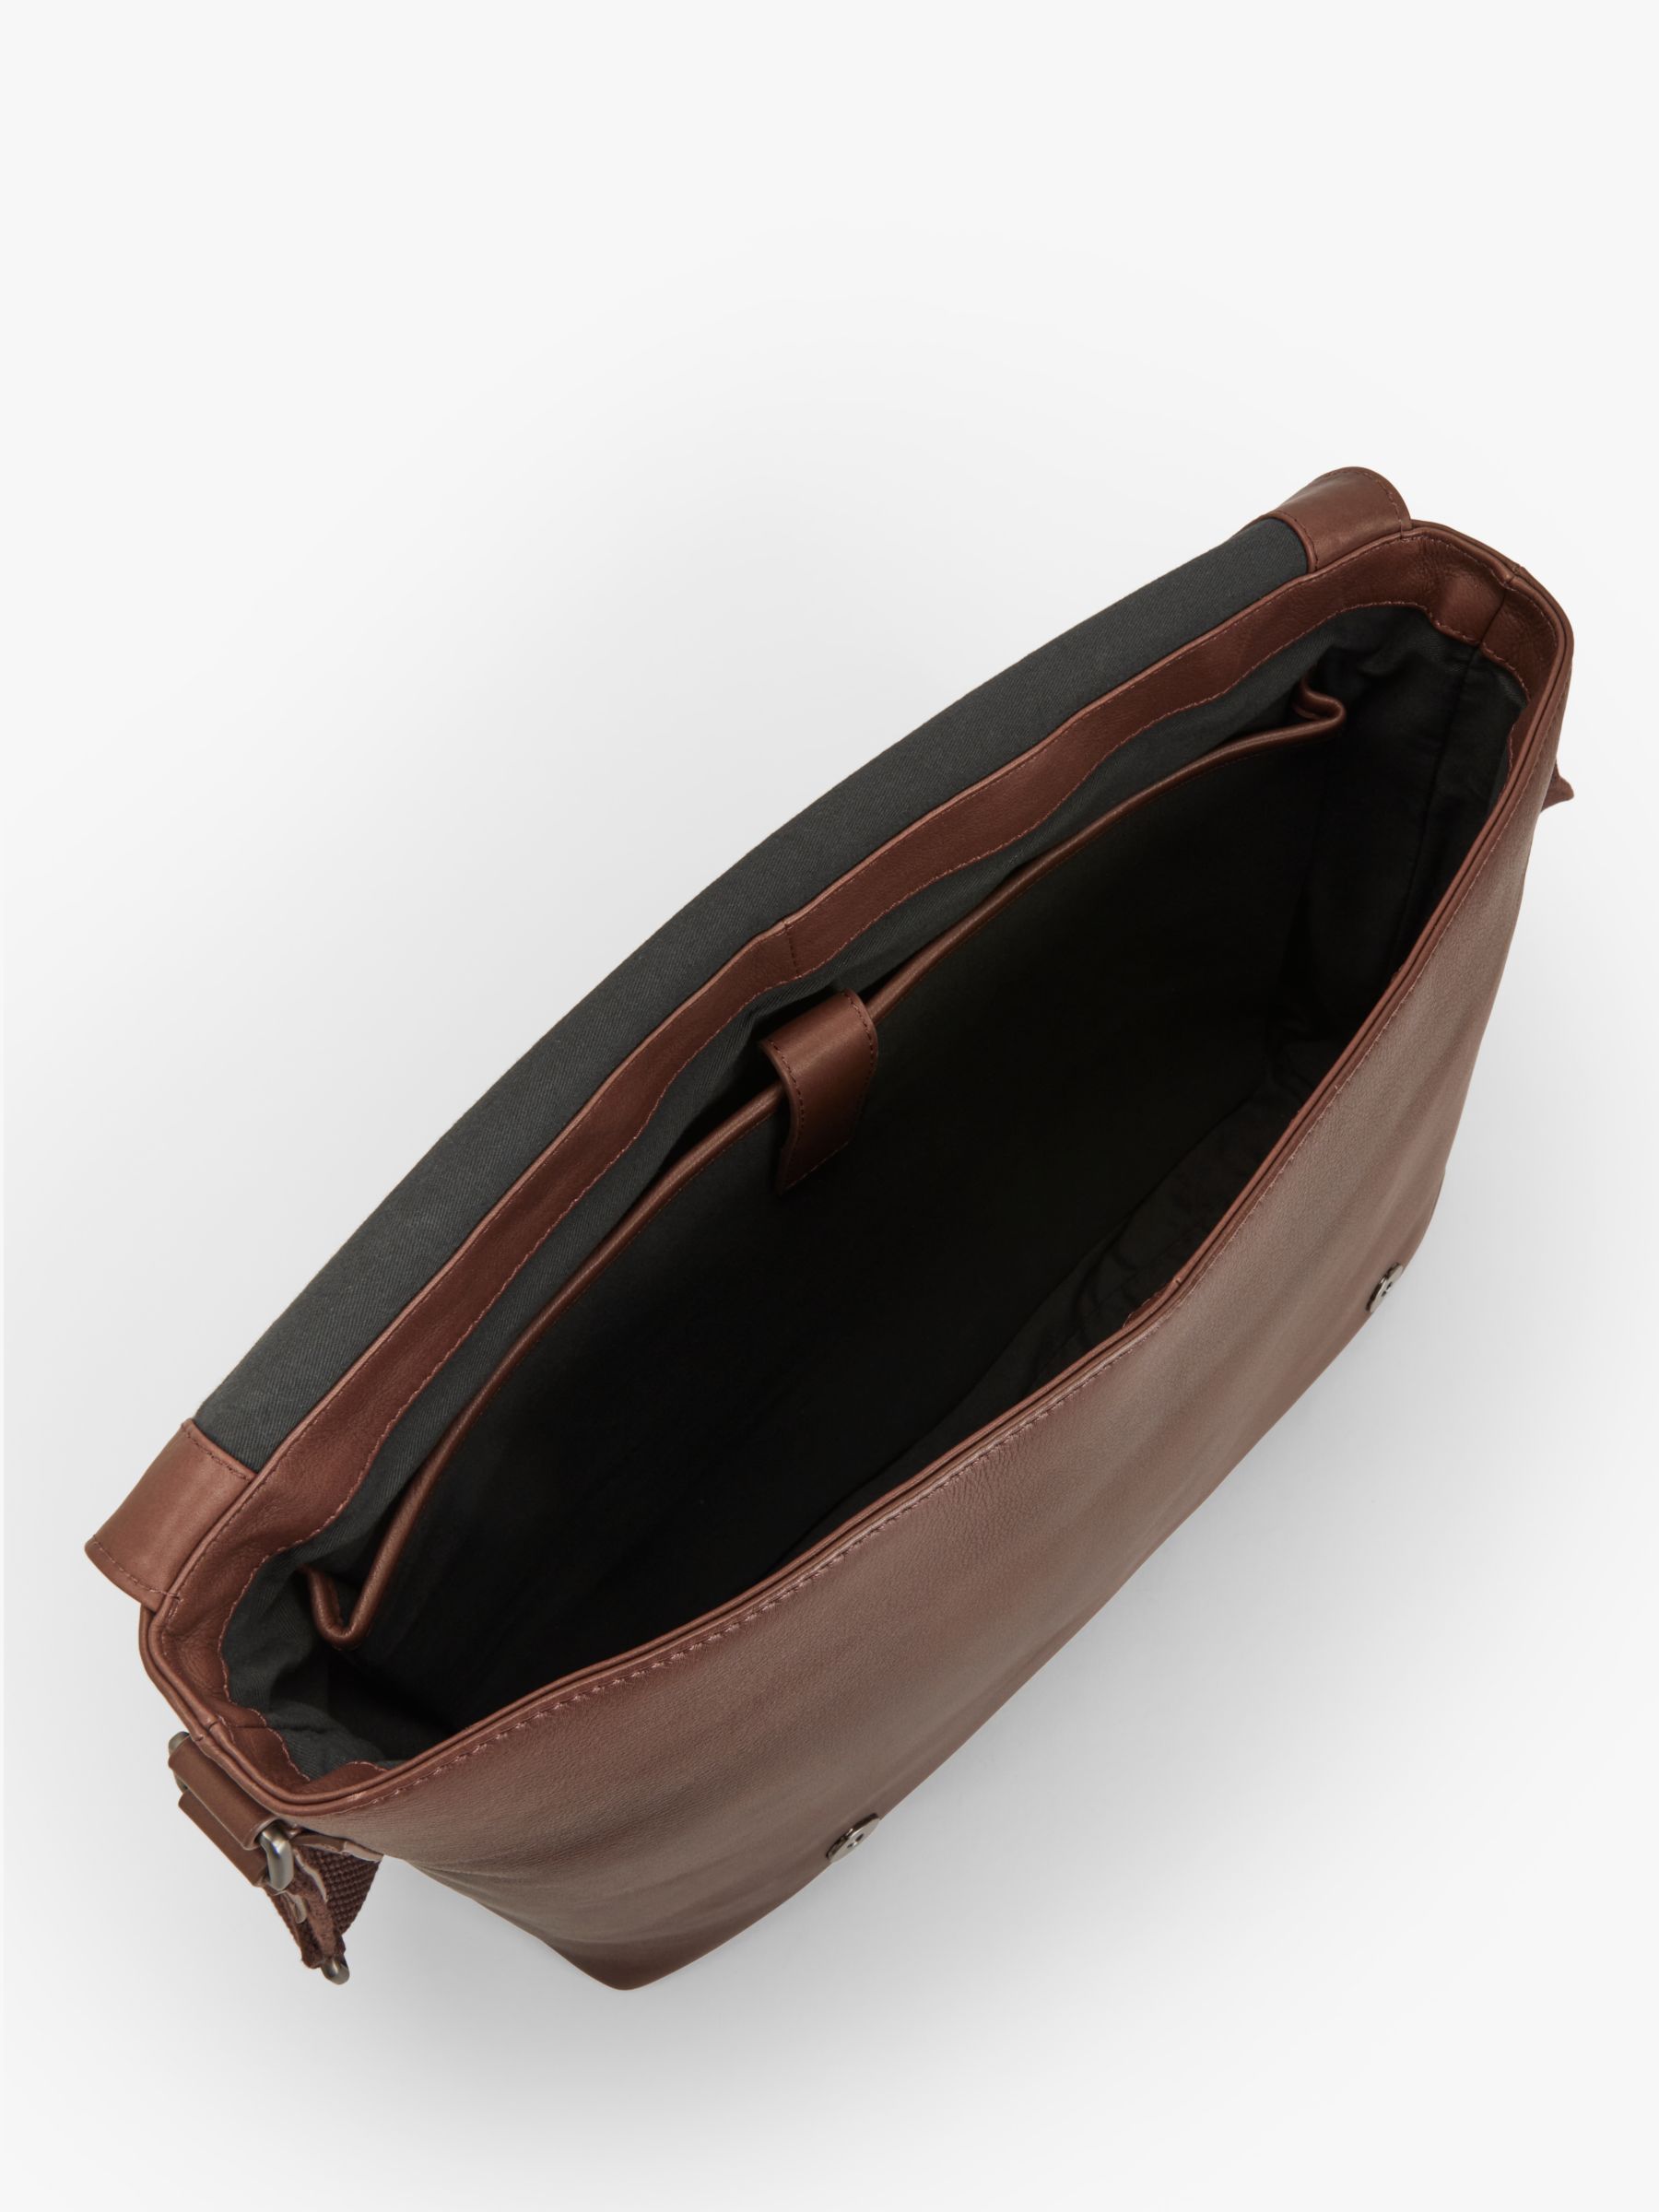 John Lewis Oslo Leather Messenger Bag, Brown at John Lewis & Partners